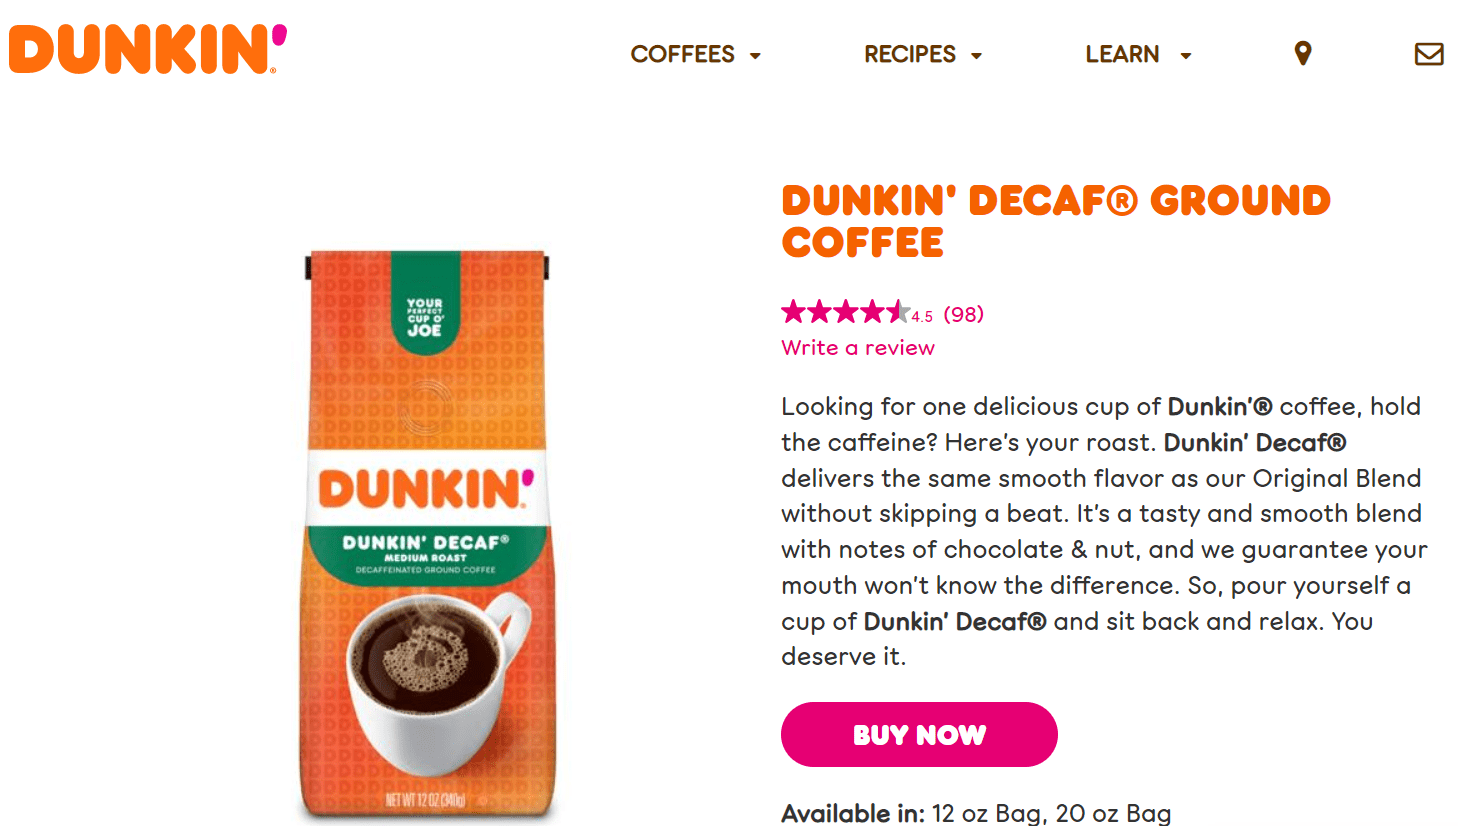 Dunkin’ Decaf